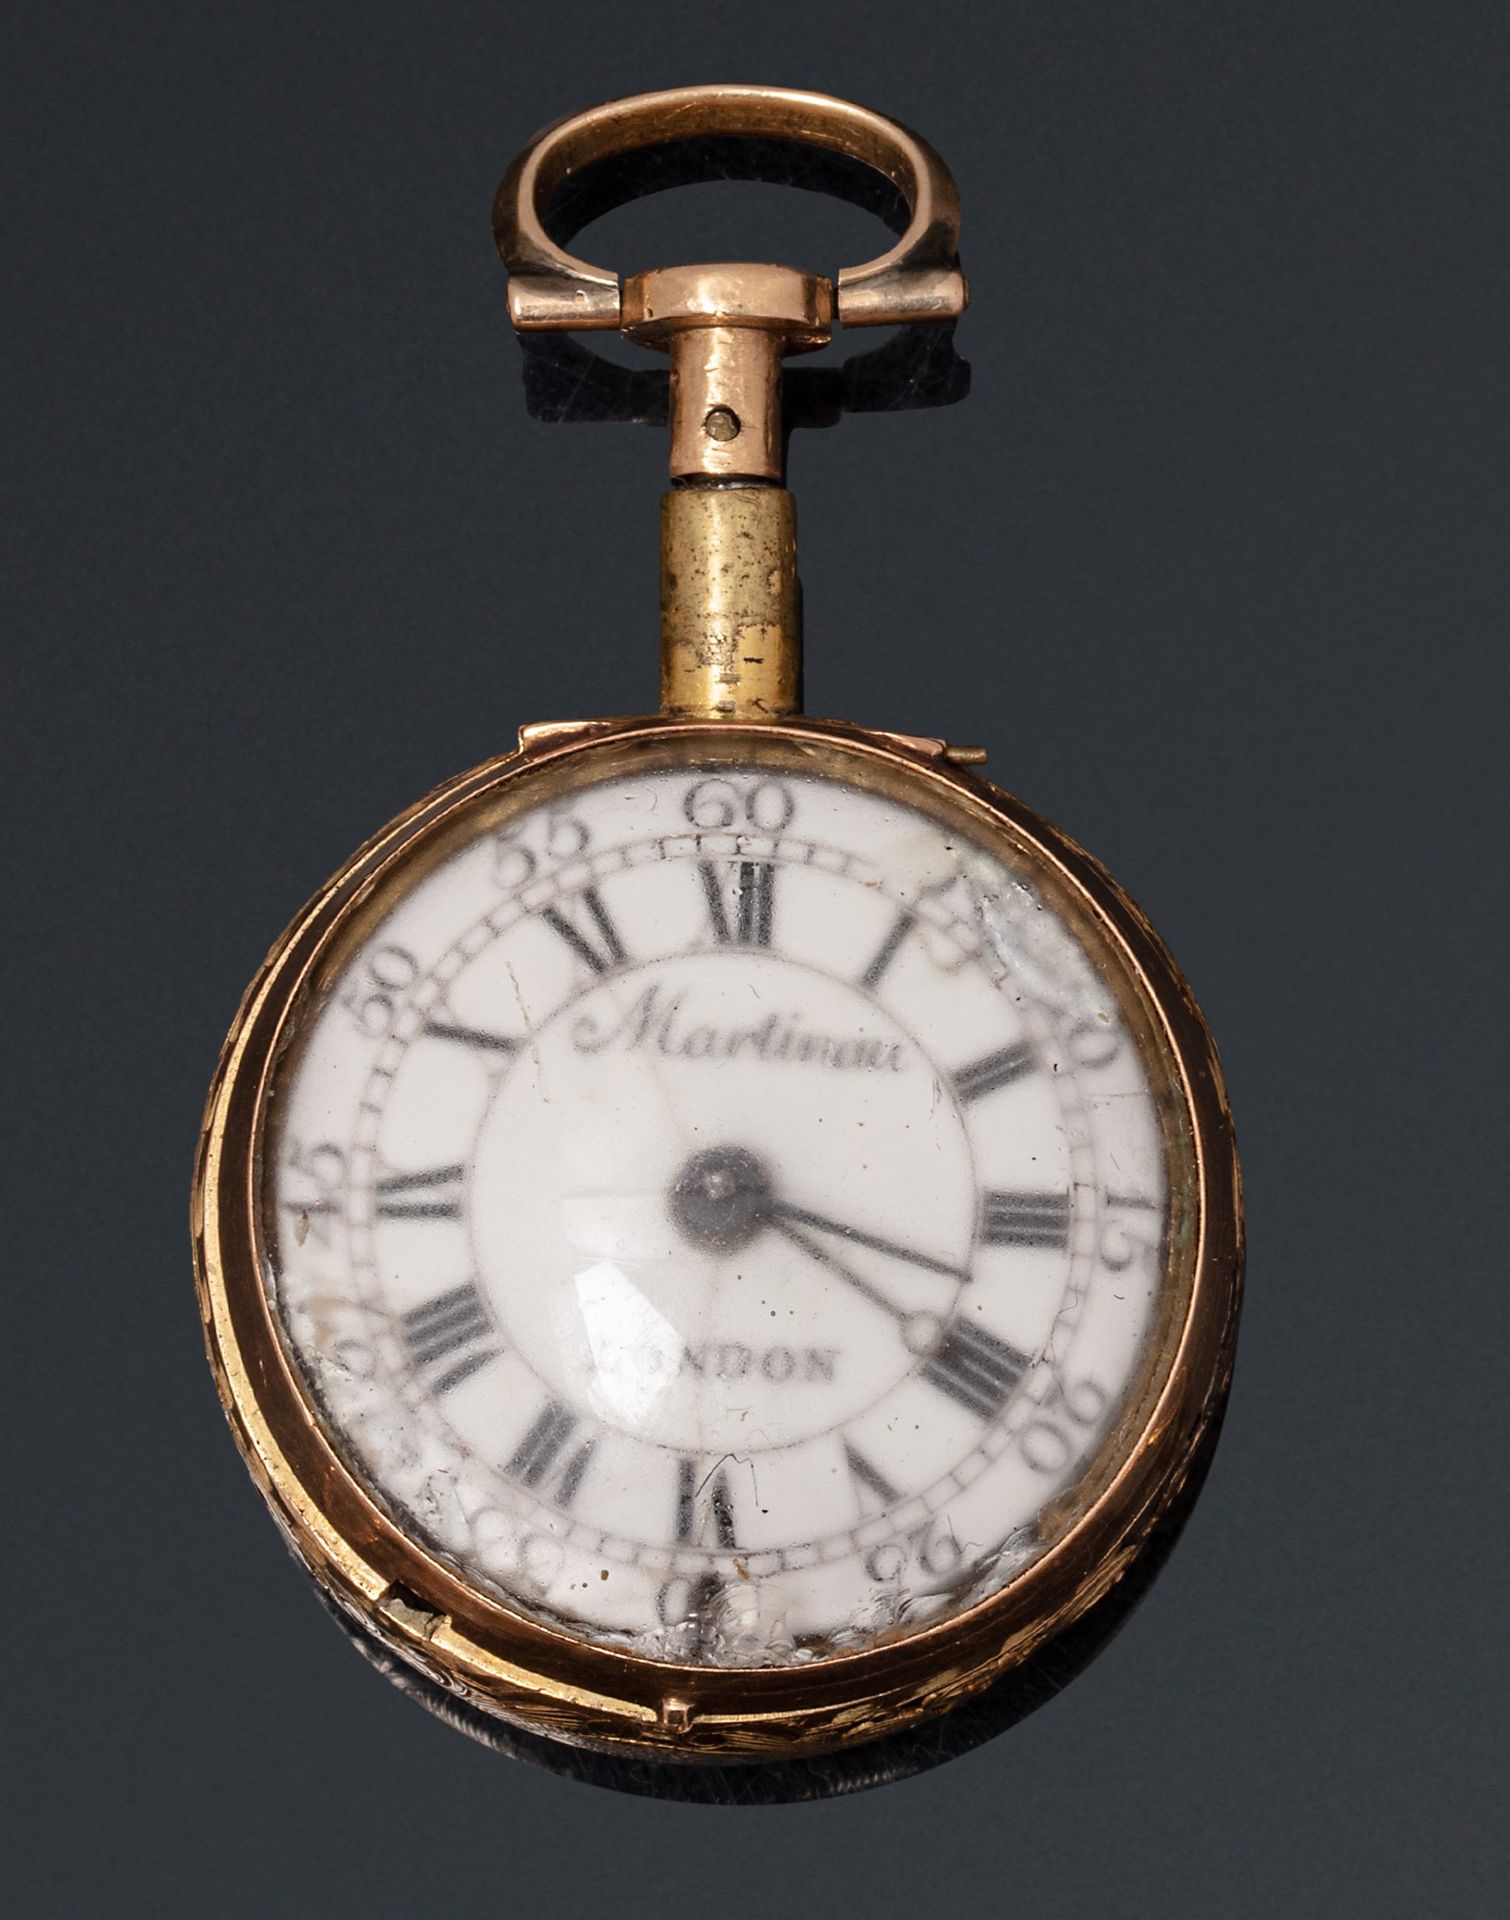 Null MARTINEAU, Londres

Mediados del siglo XVIII

Reloj de oro con timbre para &hellip;